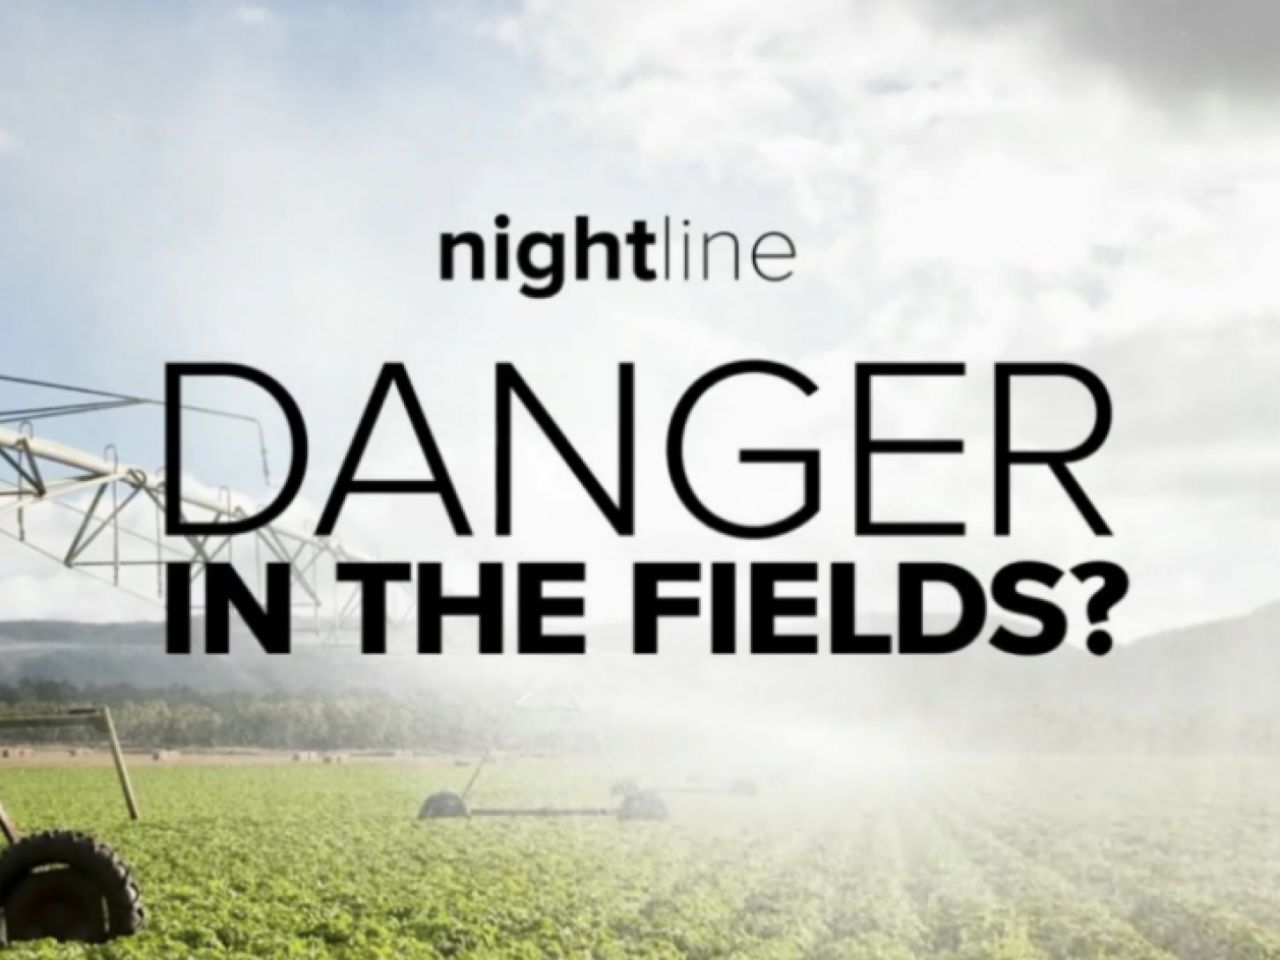 Nightline: Danger in the fields?